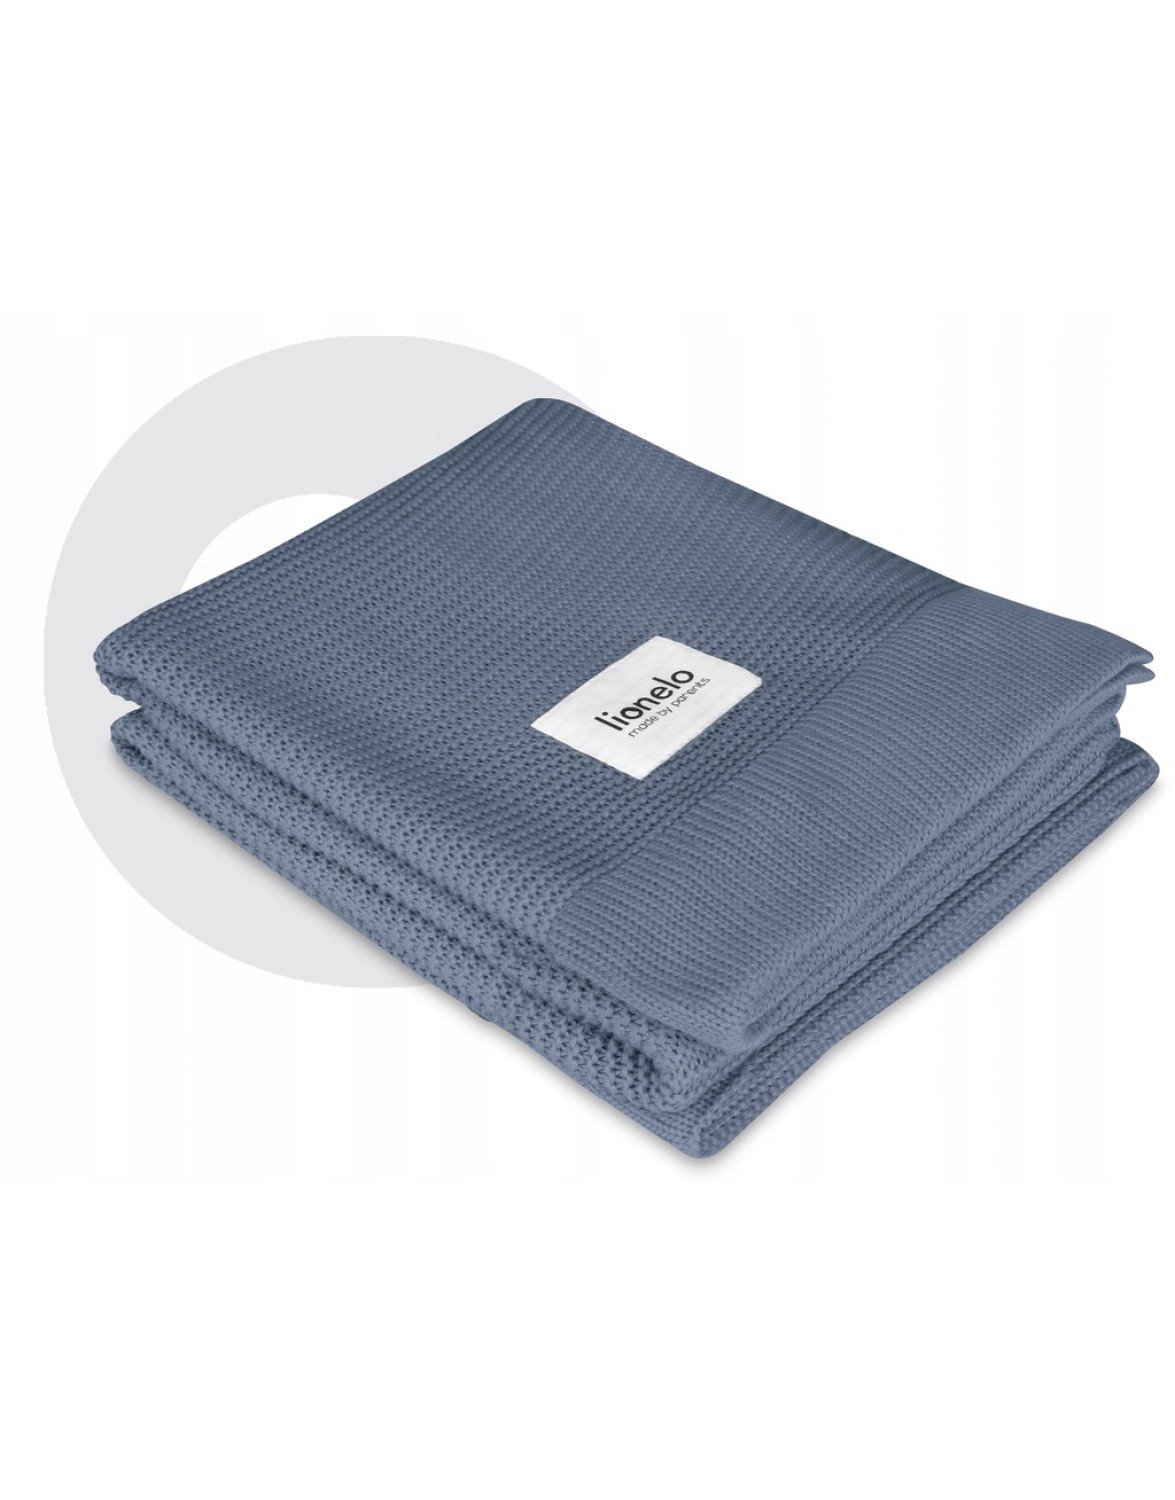 Одеяло Lionelo Bamboo Blanket Blue, 100х75 см, голубое (LO-BAMBOO BLANKET BLUE) - фото 4